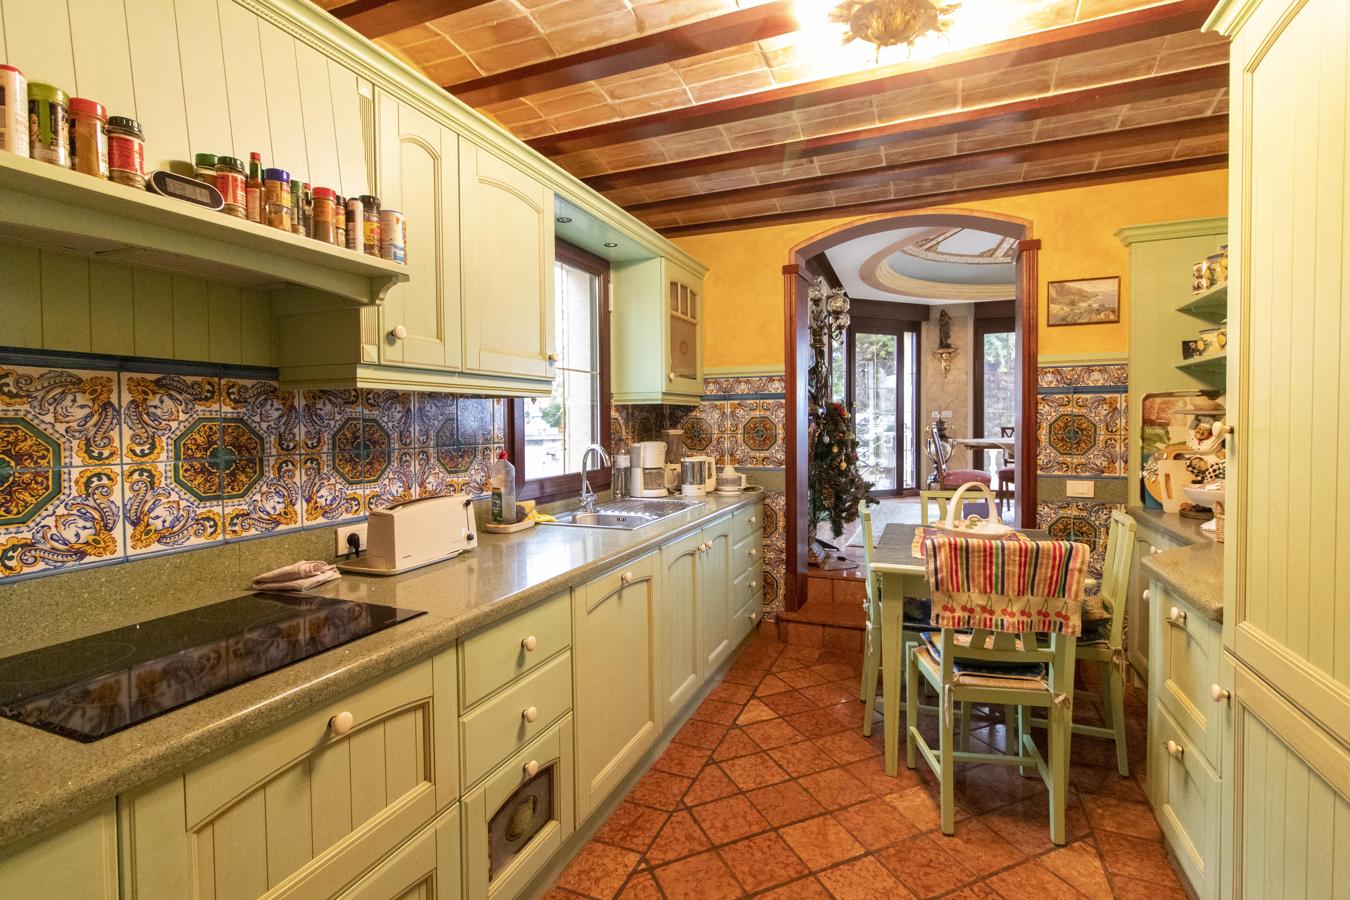 El palacete más lujoso de Tenerife busca dueño. La cocina principal tiene toques andaluces e integra electrodomésticos de última generación